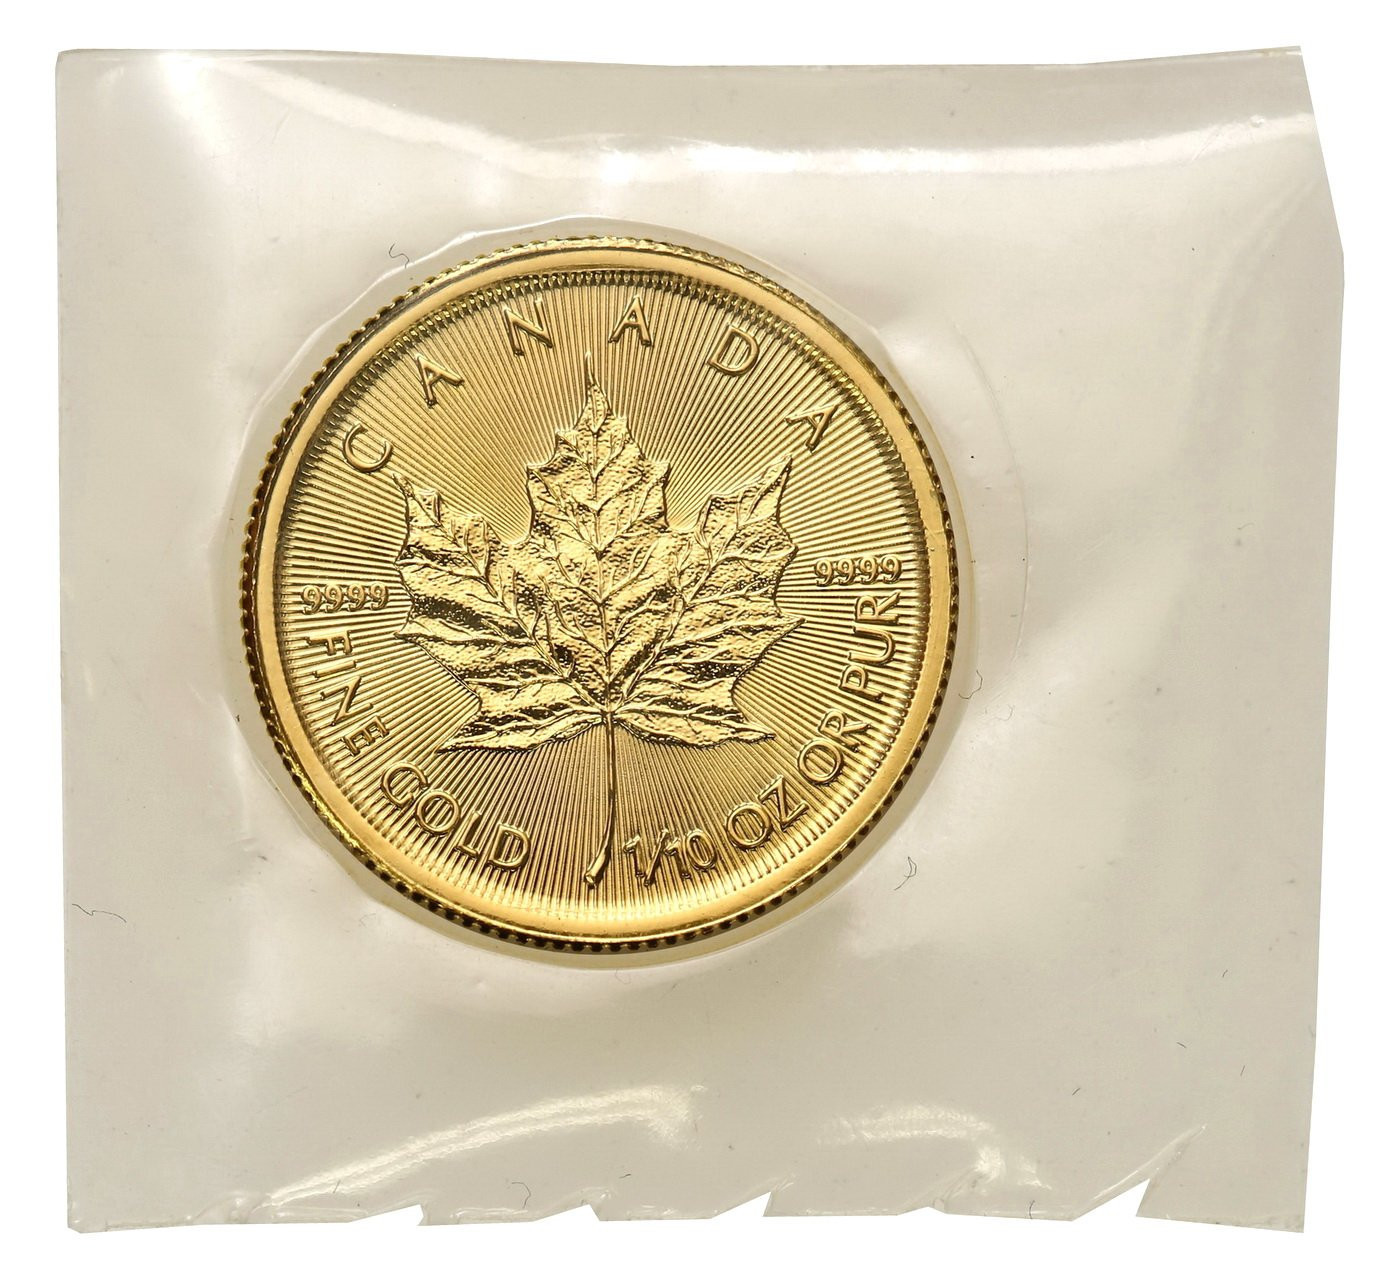 Kanada 5 dolarów 2015 liść klonowy - 1/10 uncji złota